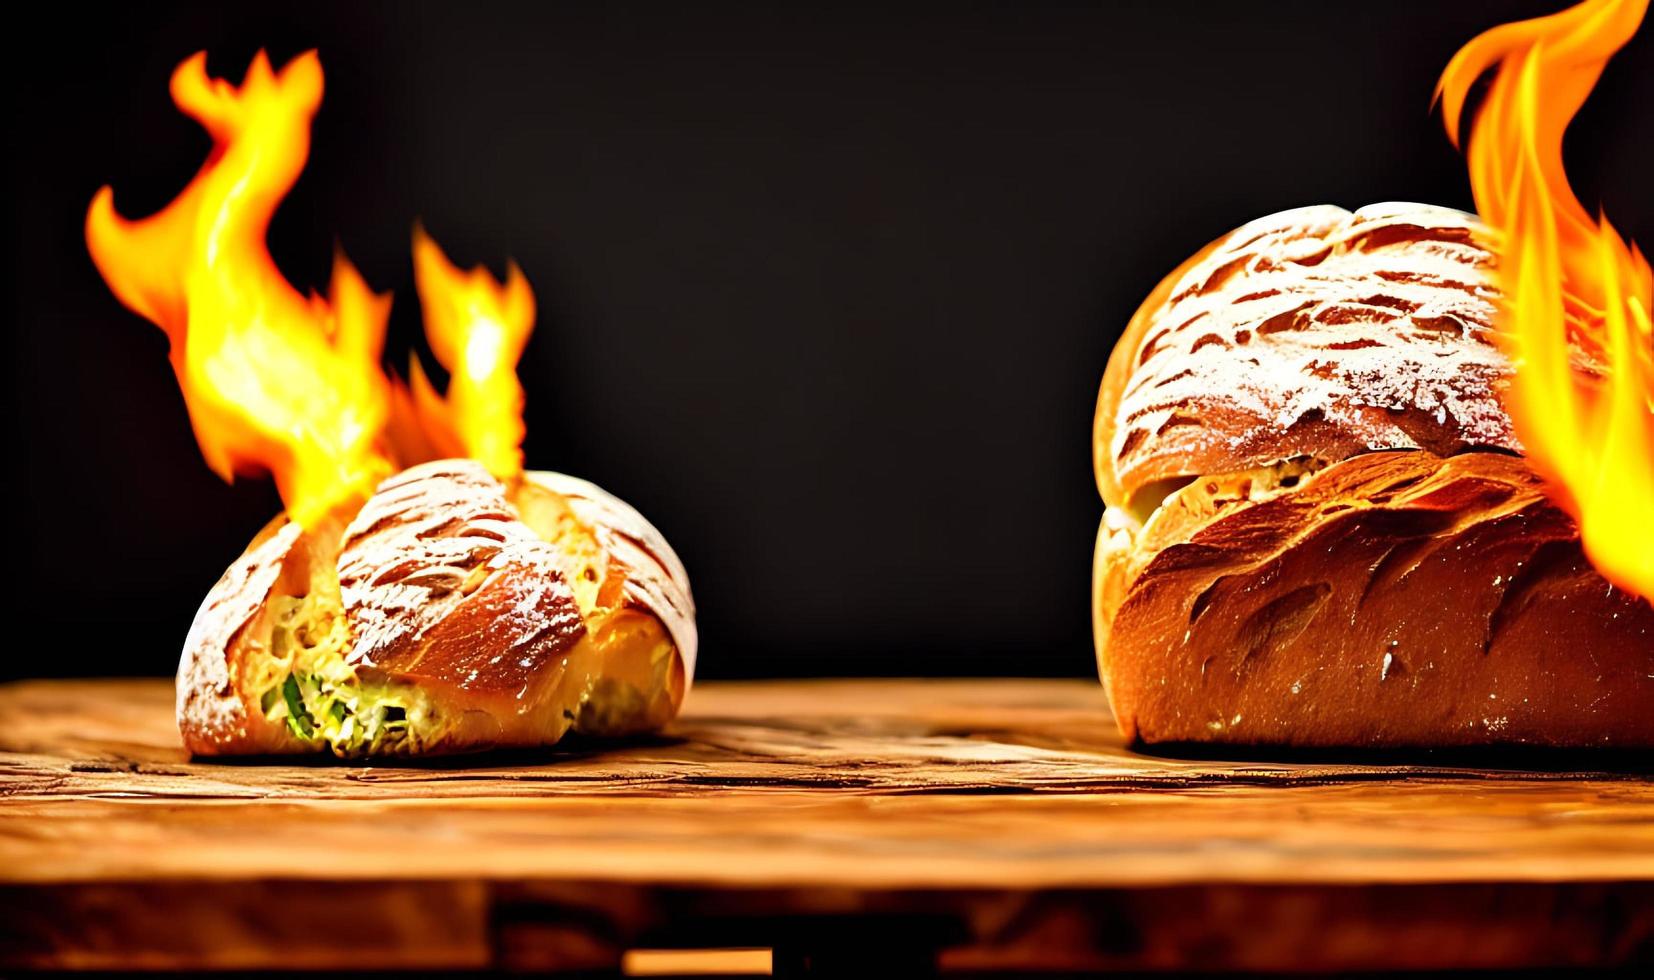 forno - tradicional pão fresco quente cozido. tiro perto do pão. foto